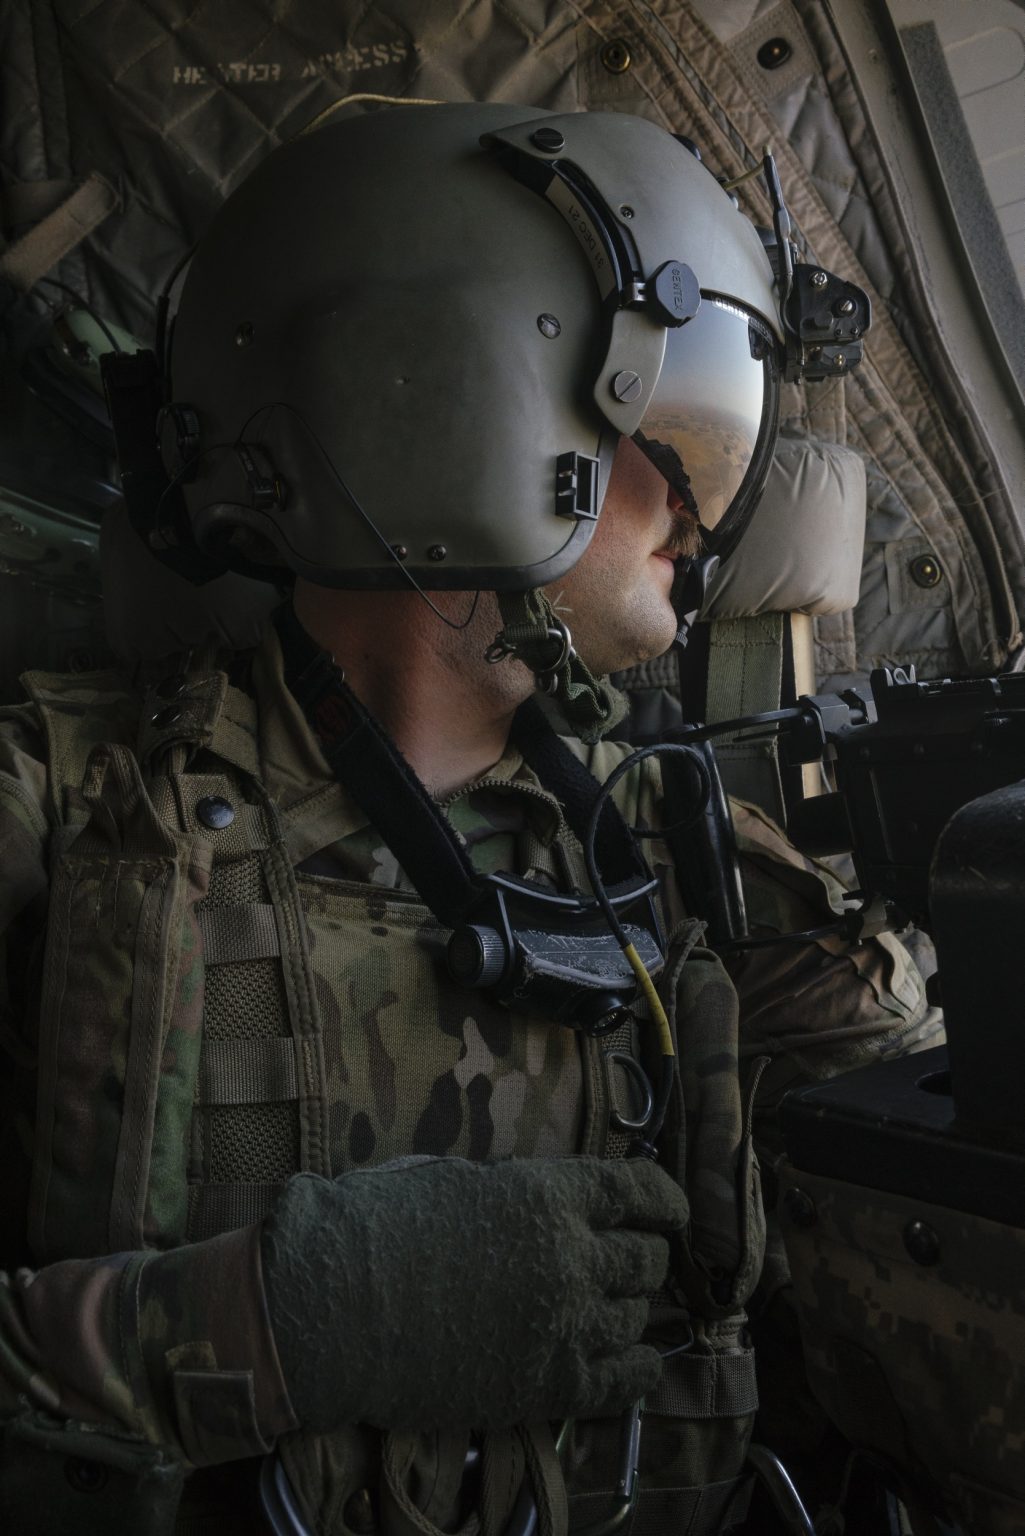 SYRIA. August 24, 2021 - A U.S. Army soldier inside a CH-47 Chinook helicopter during a flight from Erbil Air Base to a remote U.S. Army combat outpost in northeastern Syria known as RLZ.

SIRIA. 24 agosto 2021 - Un soldato dell'esercito americano all'interno di un elicottero Chinook CH-47 durante un volo dalla base aerea di Erbil a un remoto avamposto di combattimento dell'esercito degli Stati Uniti nel nord-est della Siria, noto come RLZ.